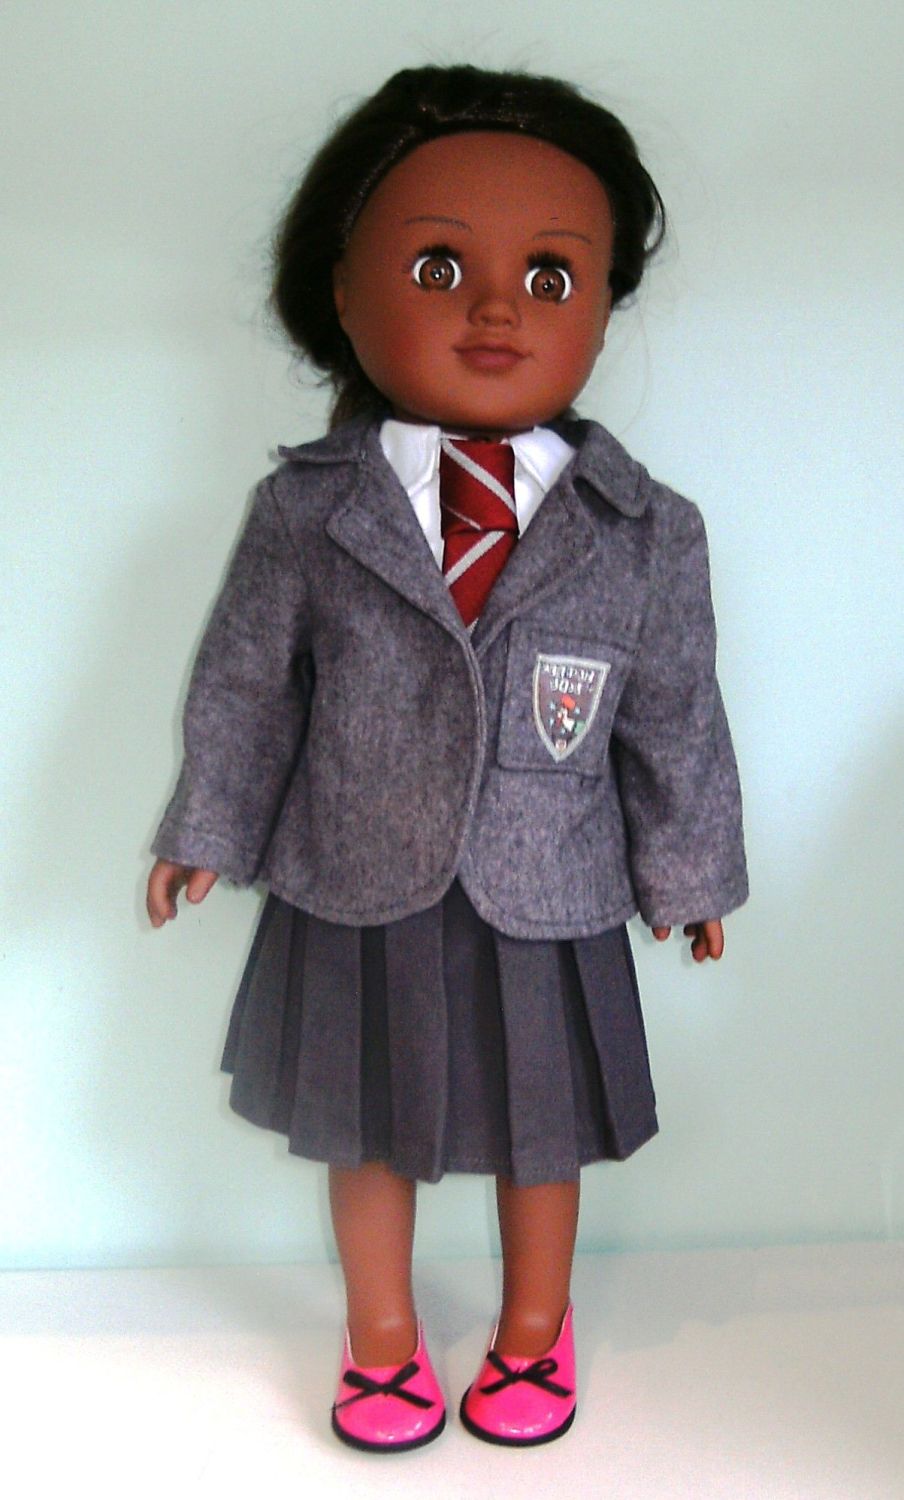 Doll's Mailda School uniform for 18 inch high girl doll